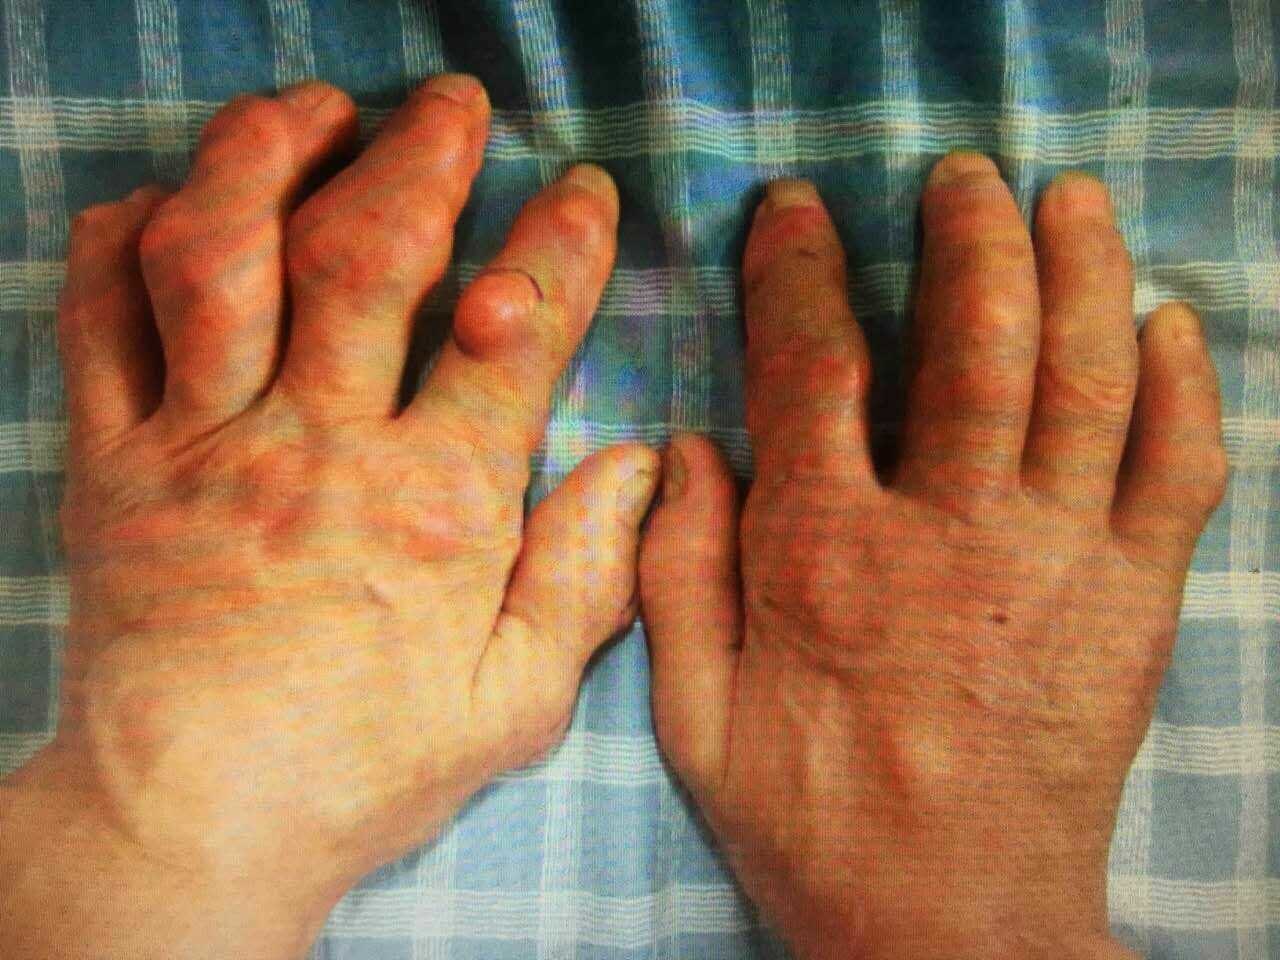 手指尿酸结晶初期图片图片